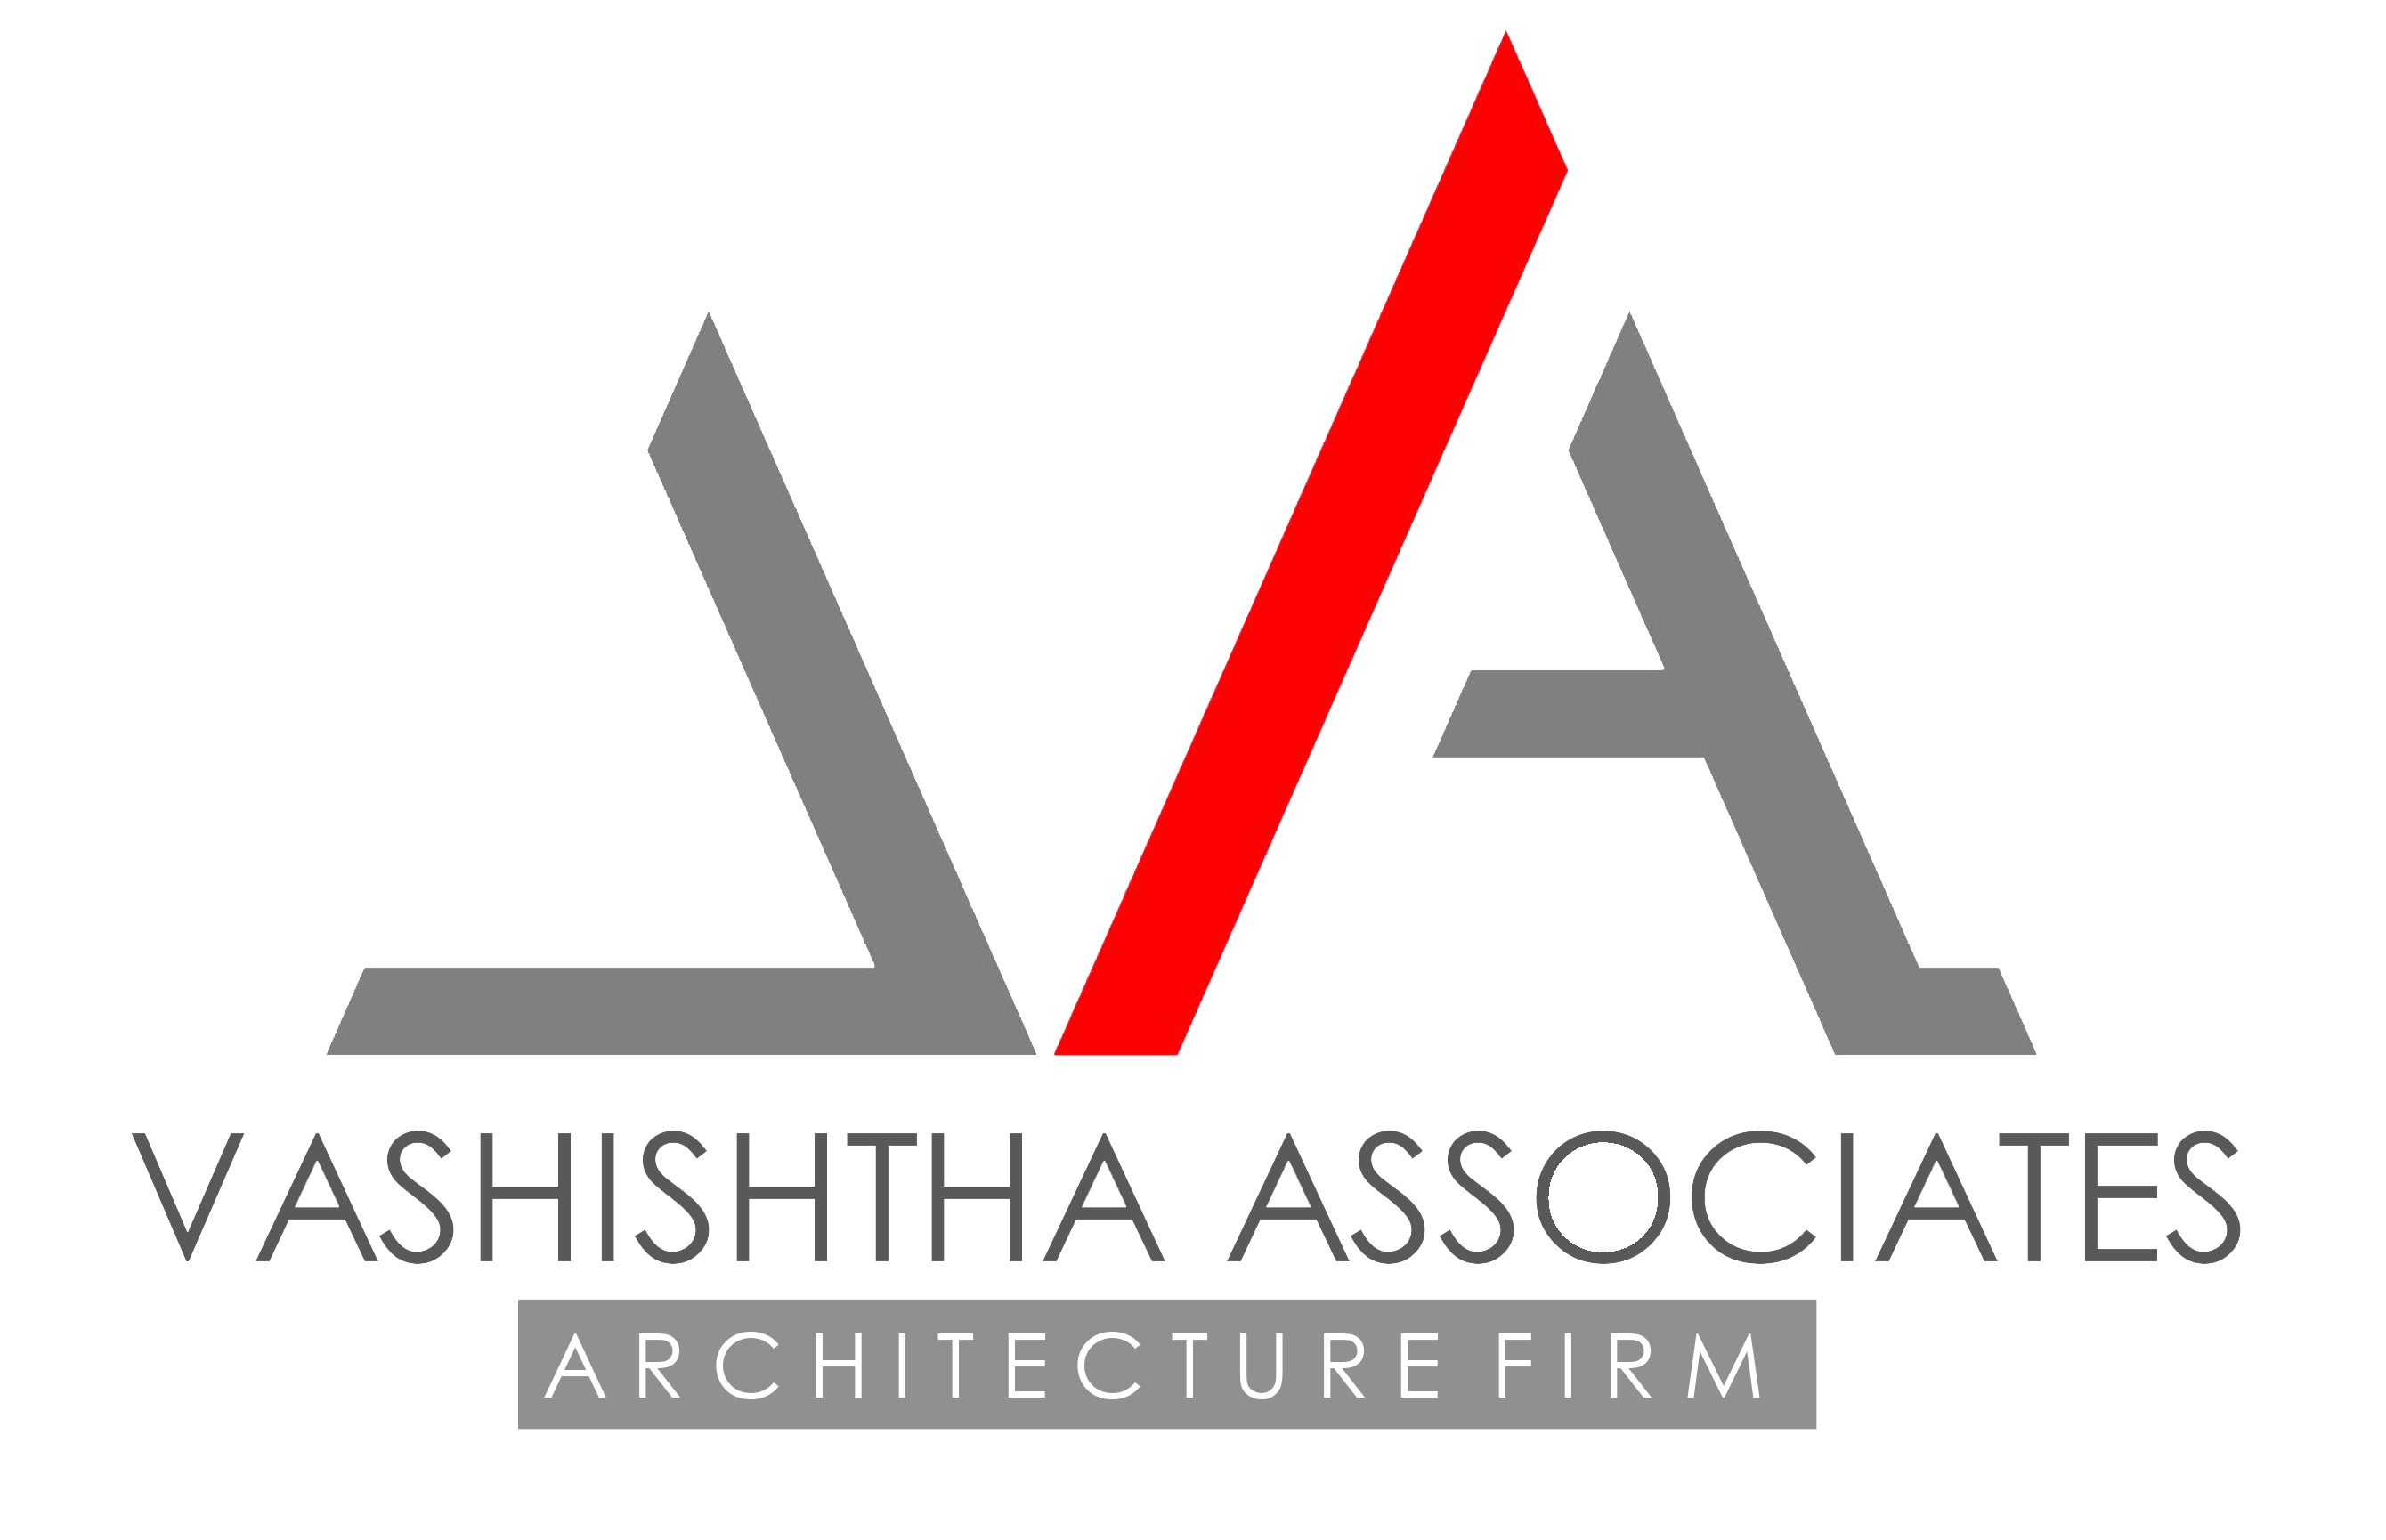 Vashishtha Associates Architecture